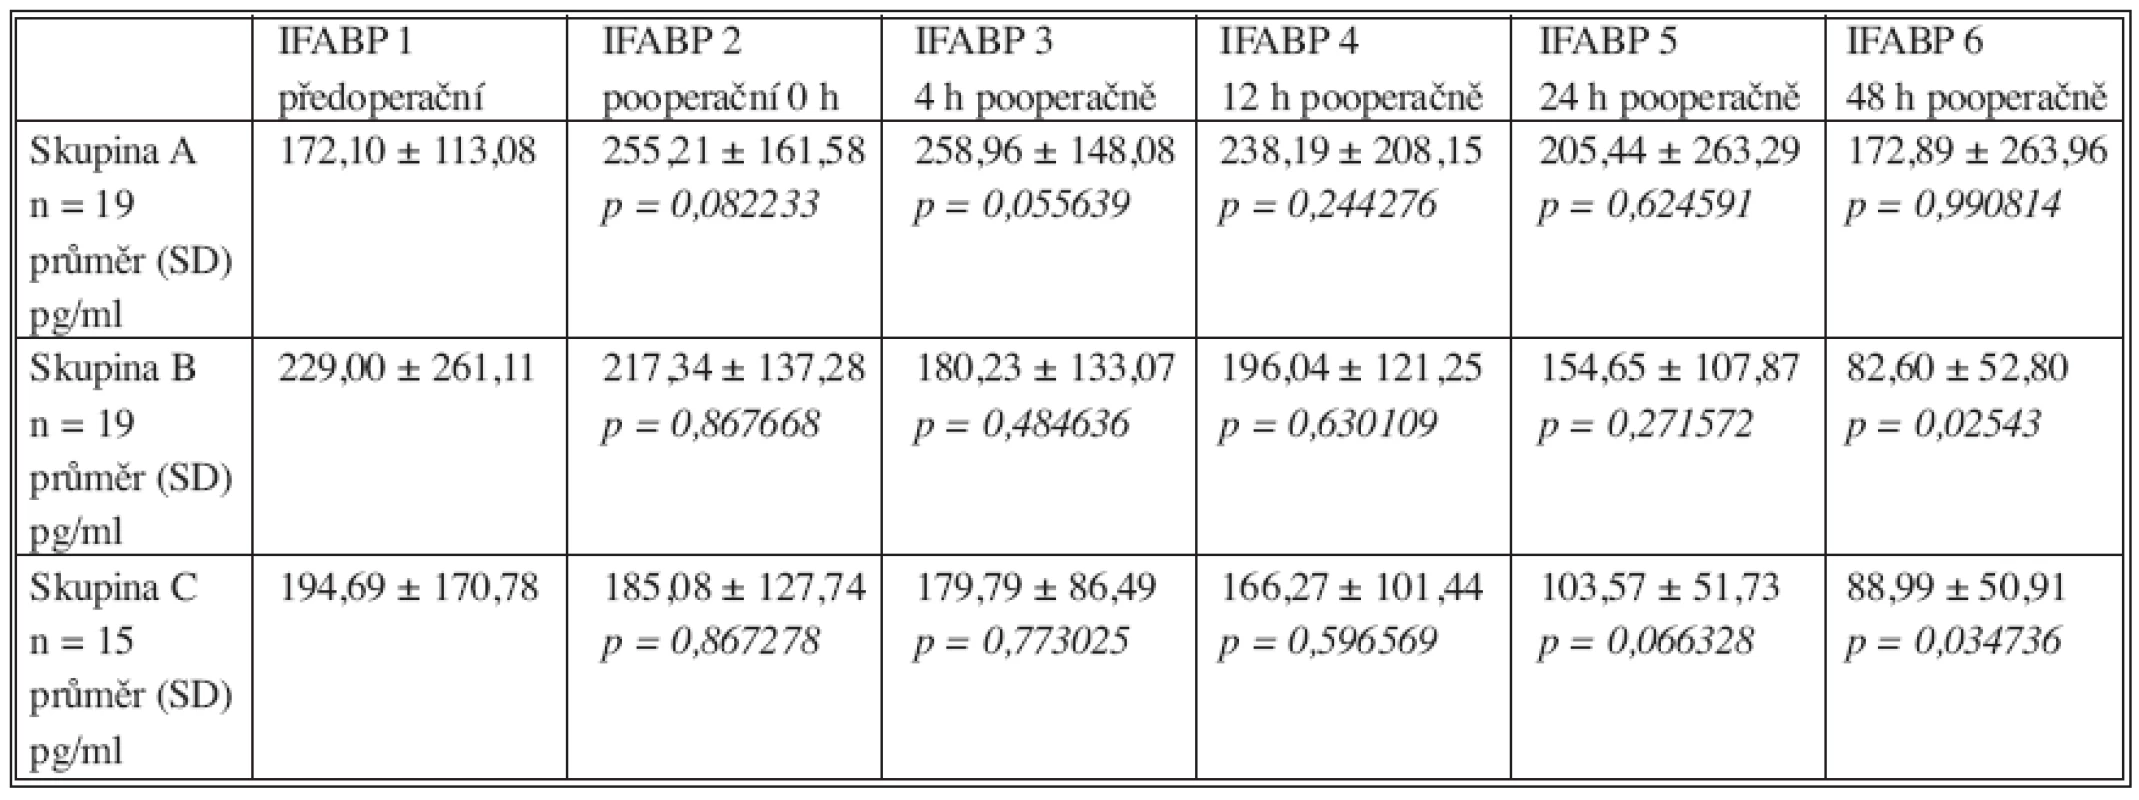 Průměrné hladiny I-FABP v jednotlivých intervalech měření ve skupině A, B a C. Hladiny významnosti (p) párového porovnání průměru (ANOVA) jednotlivých pooperačních měření s předoperačně stanovenou průměrnou hladinou I-FABP (SD směrodatná odchylka)
Table 2. Mean I-FABP values in individual measurement intervals in Group A, B, and C. P-value (p) of 2x2 factorial analysis (ANOVA) of individual postoperative measurements means with preoperatively determined mean I-FABP values (SD standard deviation)